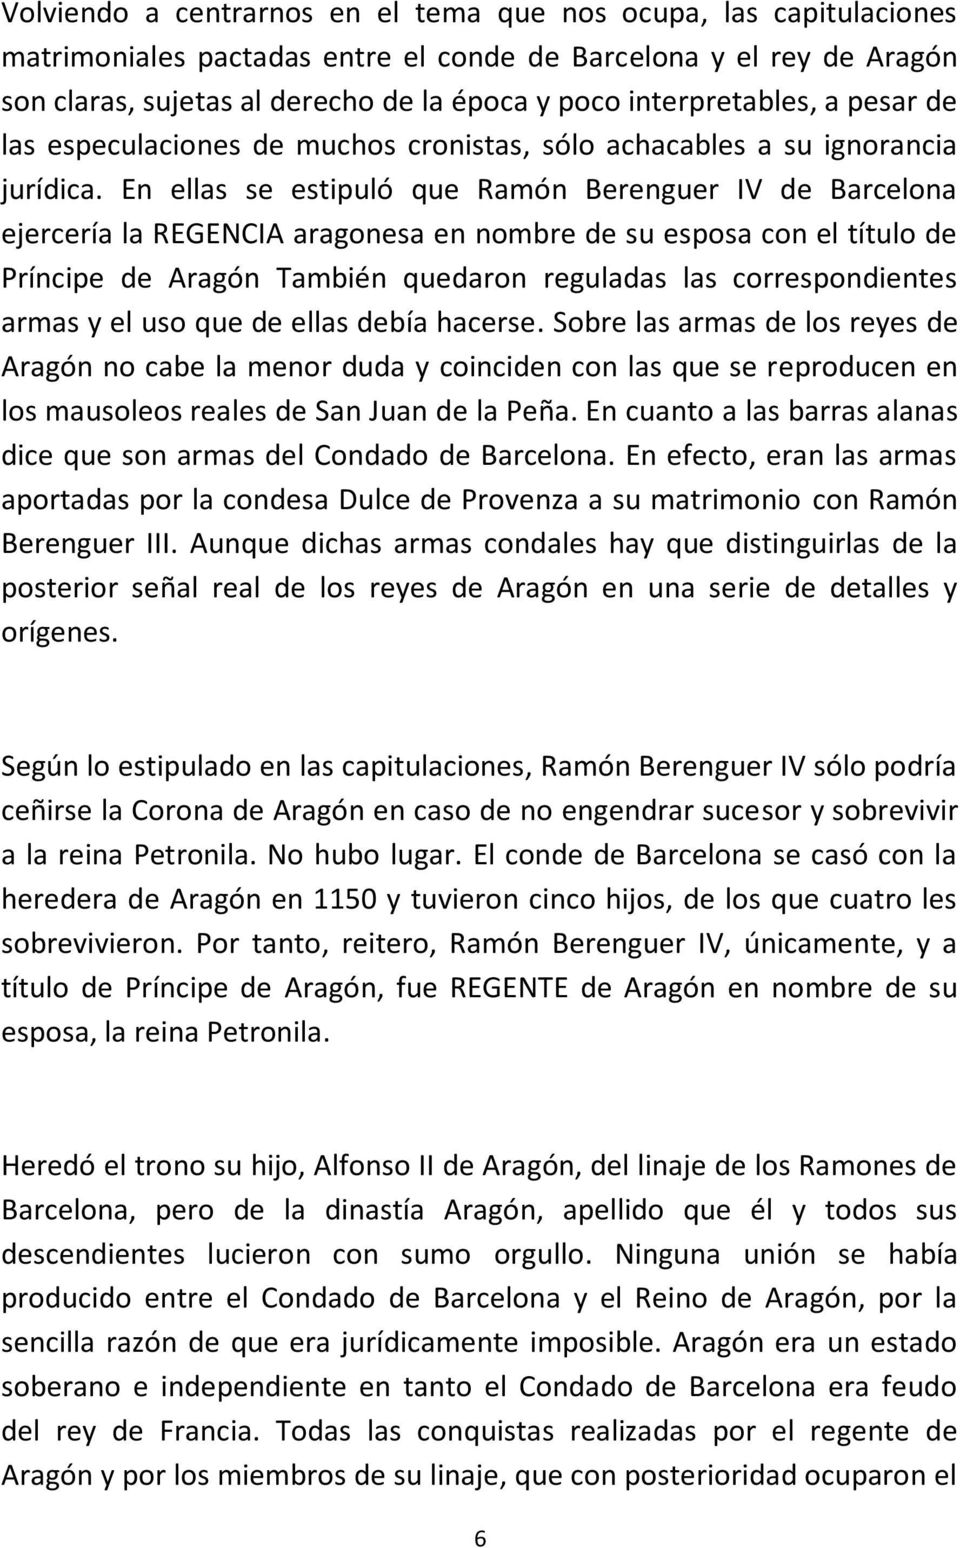 En ellas se estipuló que Ramón Berenguer IV de Barcelona ejercería la REGENCIA aragonesa en nombre de su esposa con el título de Príncipe de Aragón También quedaron reguladas las correspondientes